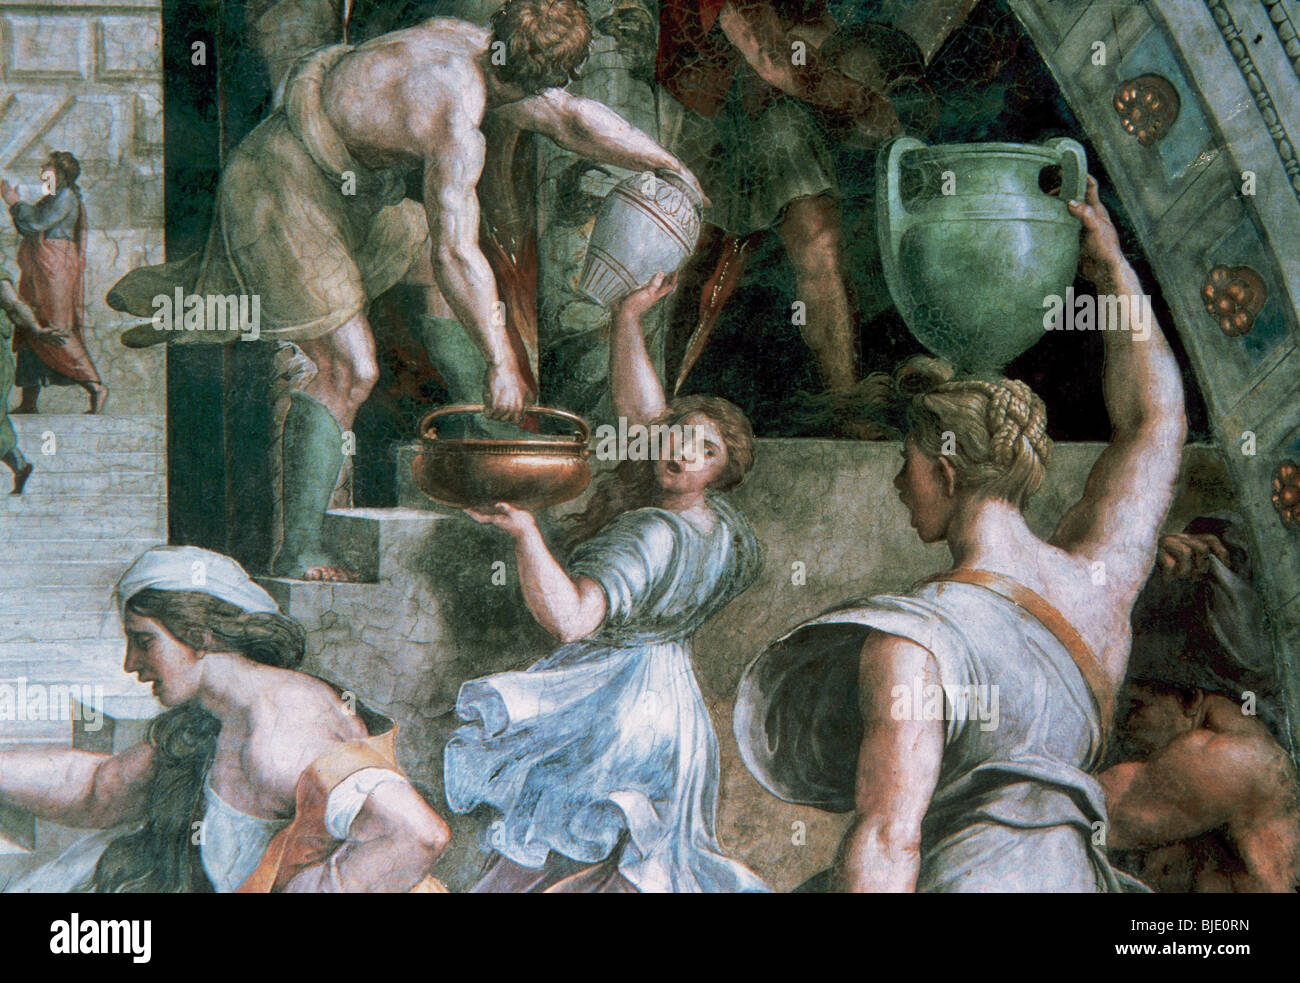 Raphael, Raffaello Santi oder Sanzio, genannt (Urbino, 1483-Rom, 1520). Italienischer Maler. Das Feuer im Borgo von Giulio Romano. Stockfoto